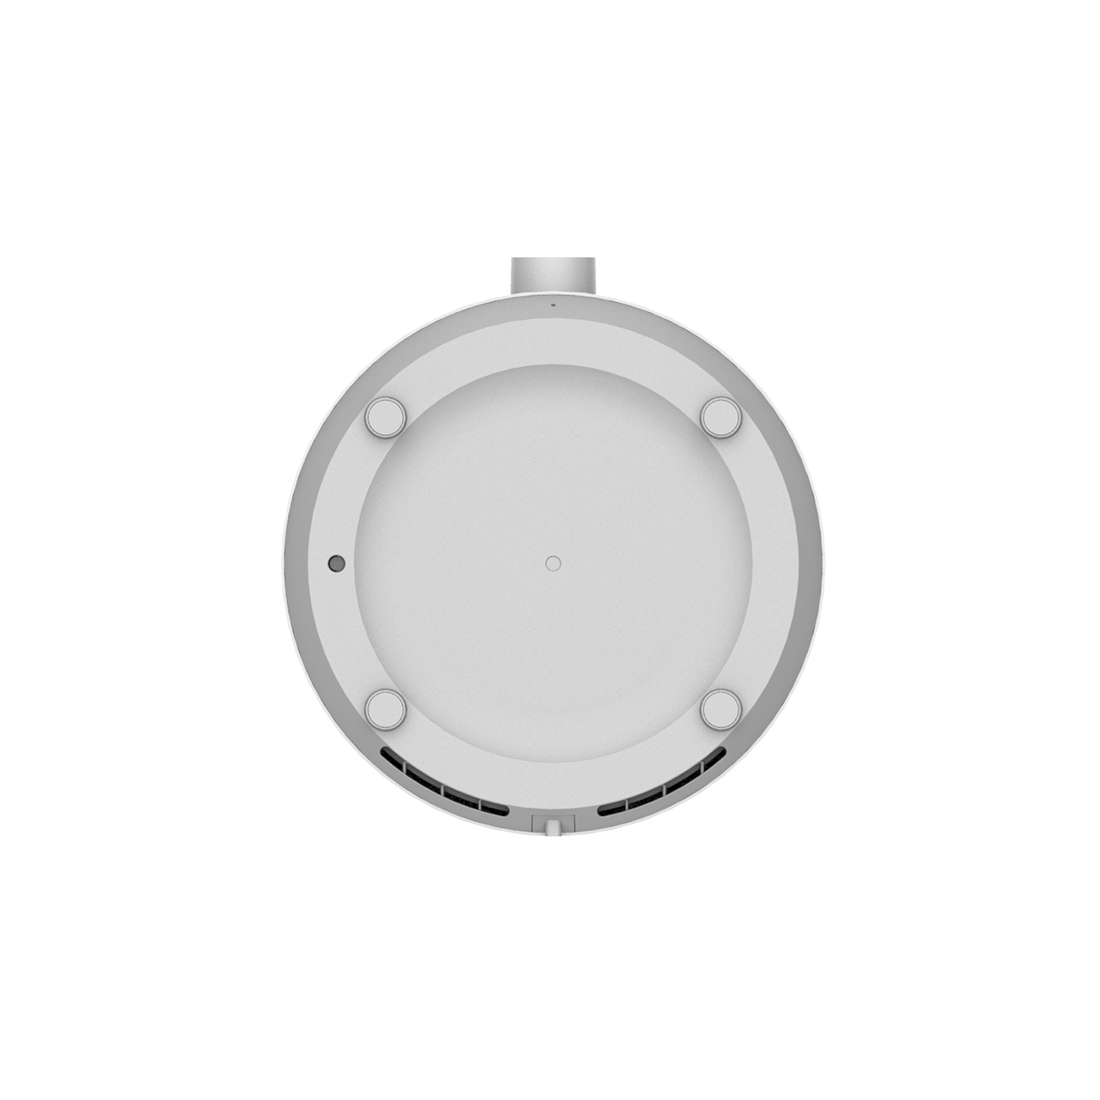 Увлажнитель воздуха Xiaomi Smart Humidifier 2 Lite Белый